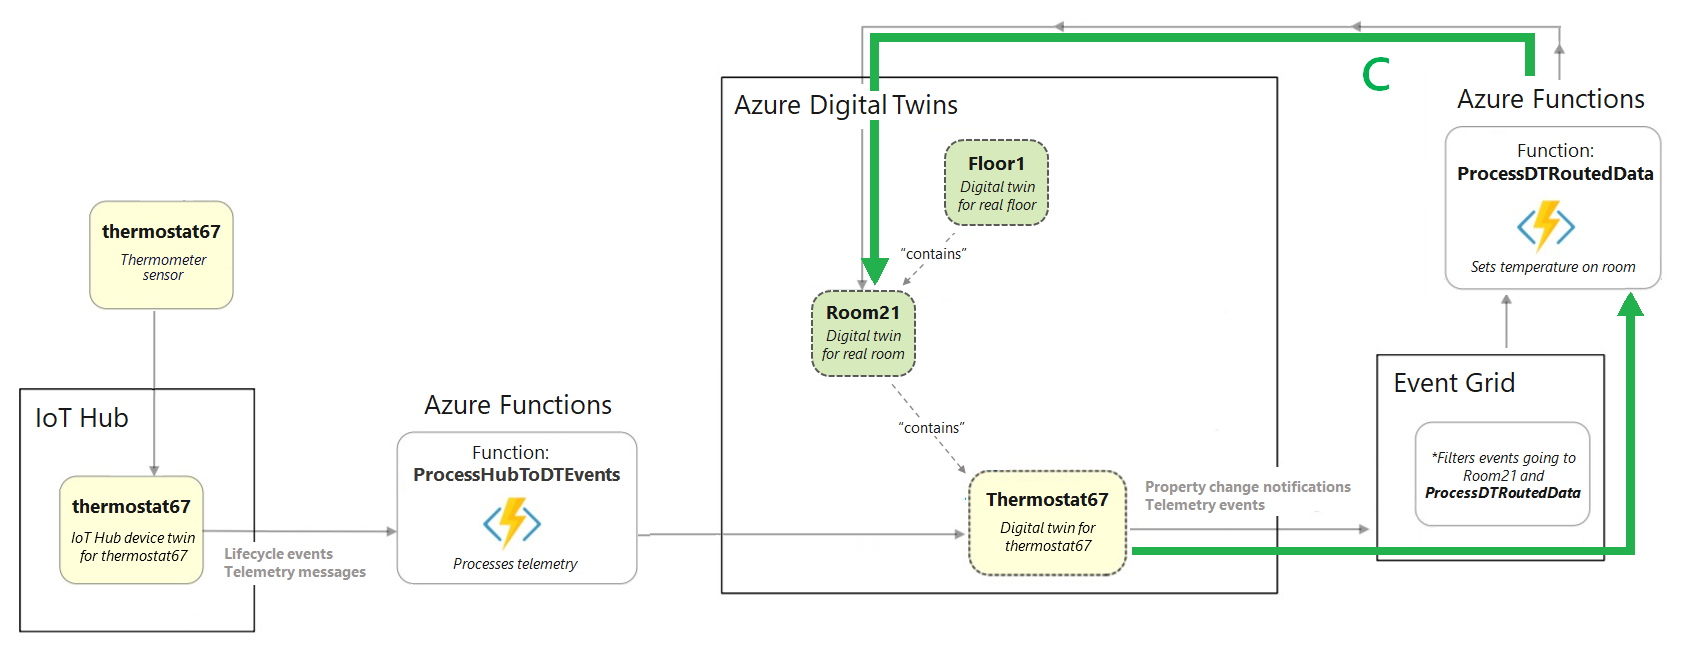 Diagrama que muestra un extracto del diagrama del escenario de creación completo. Se muestra resaltada la sección que ilustra los elementos después de Azure Digital Twins.